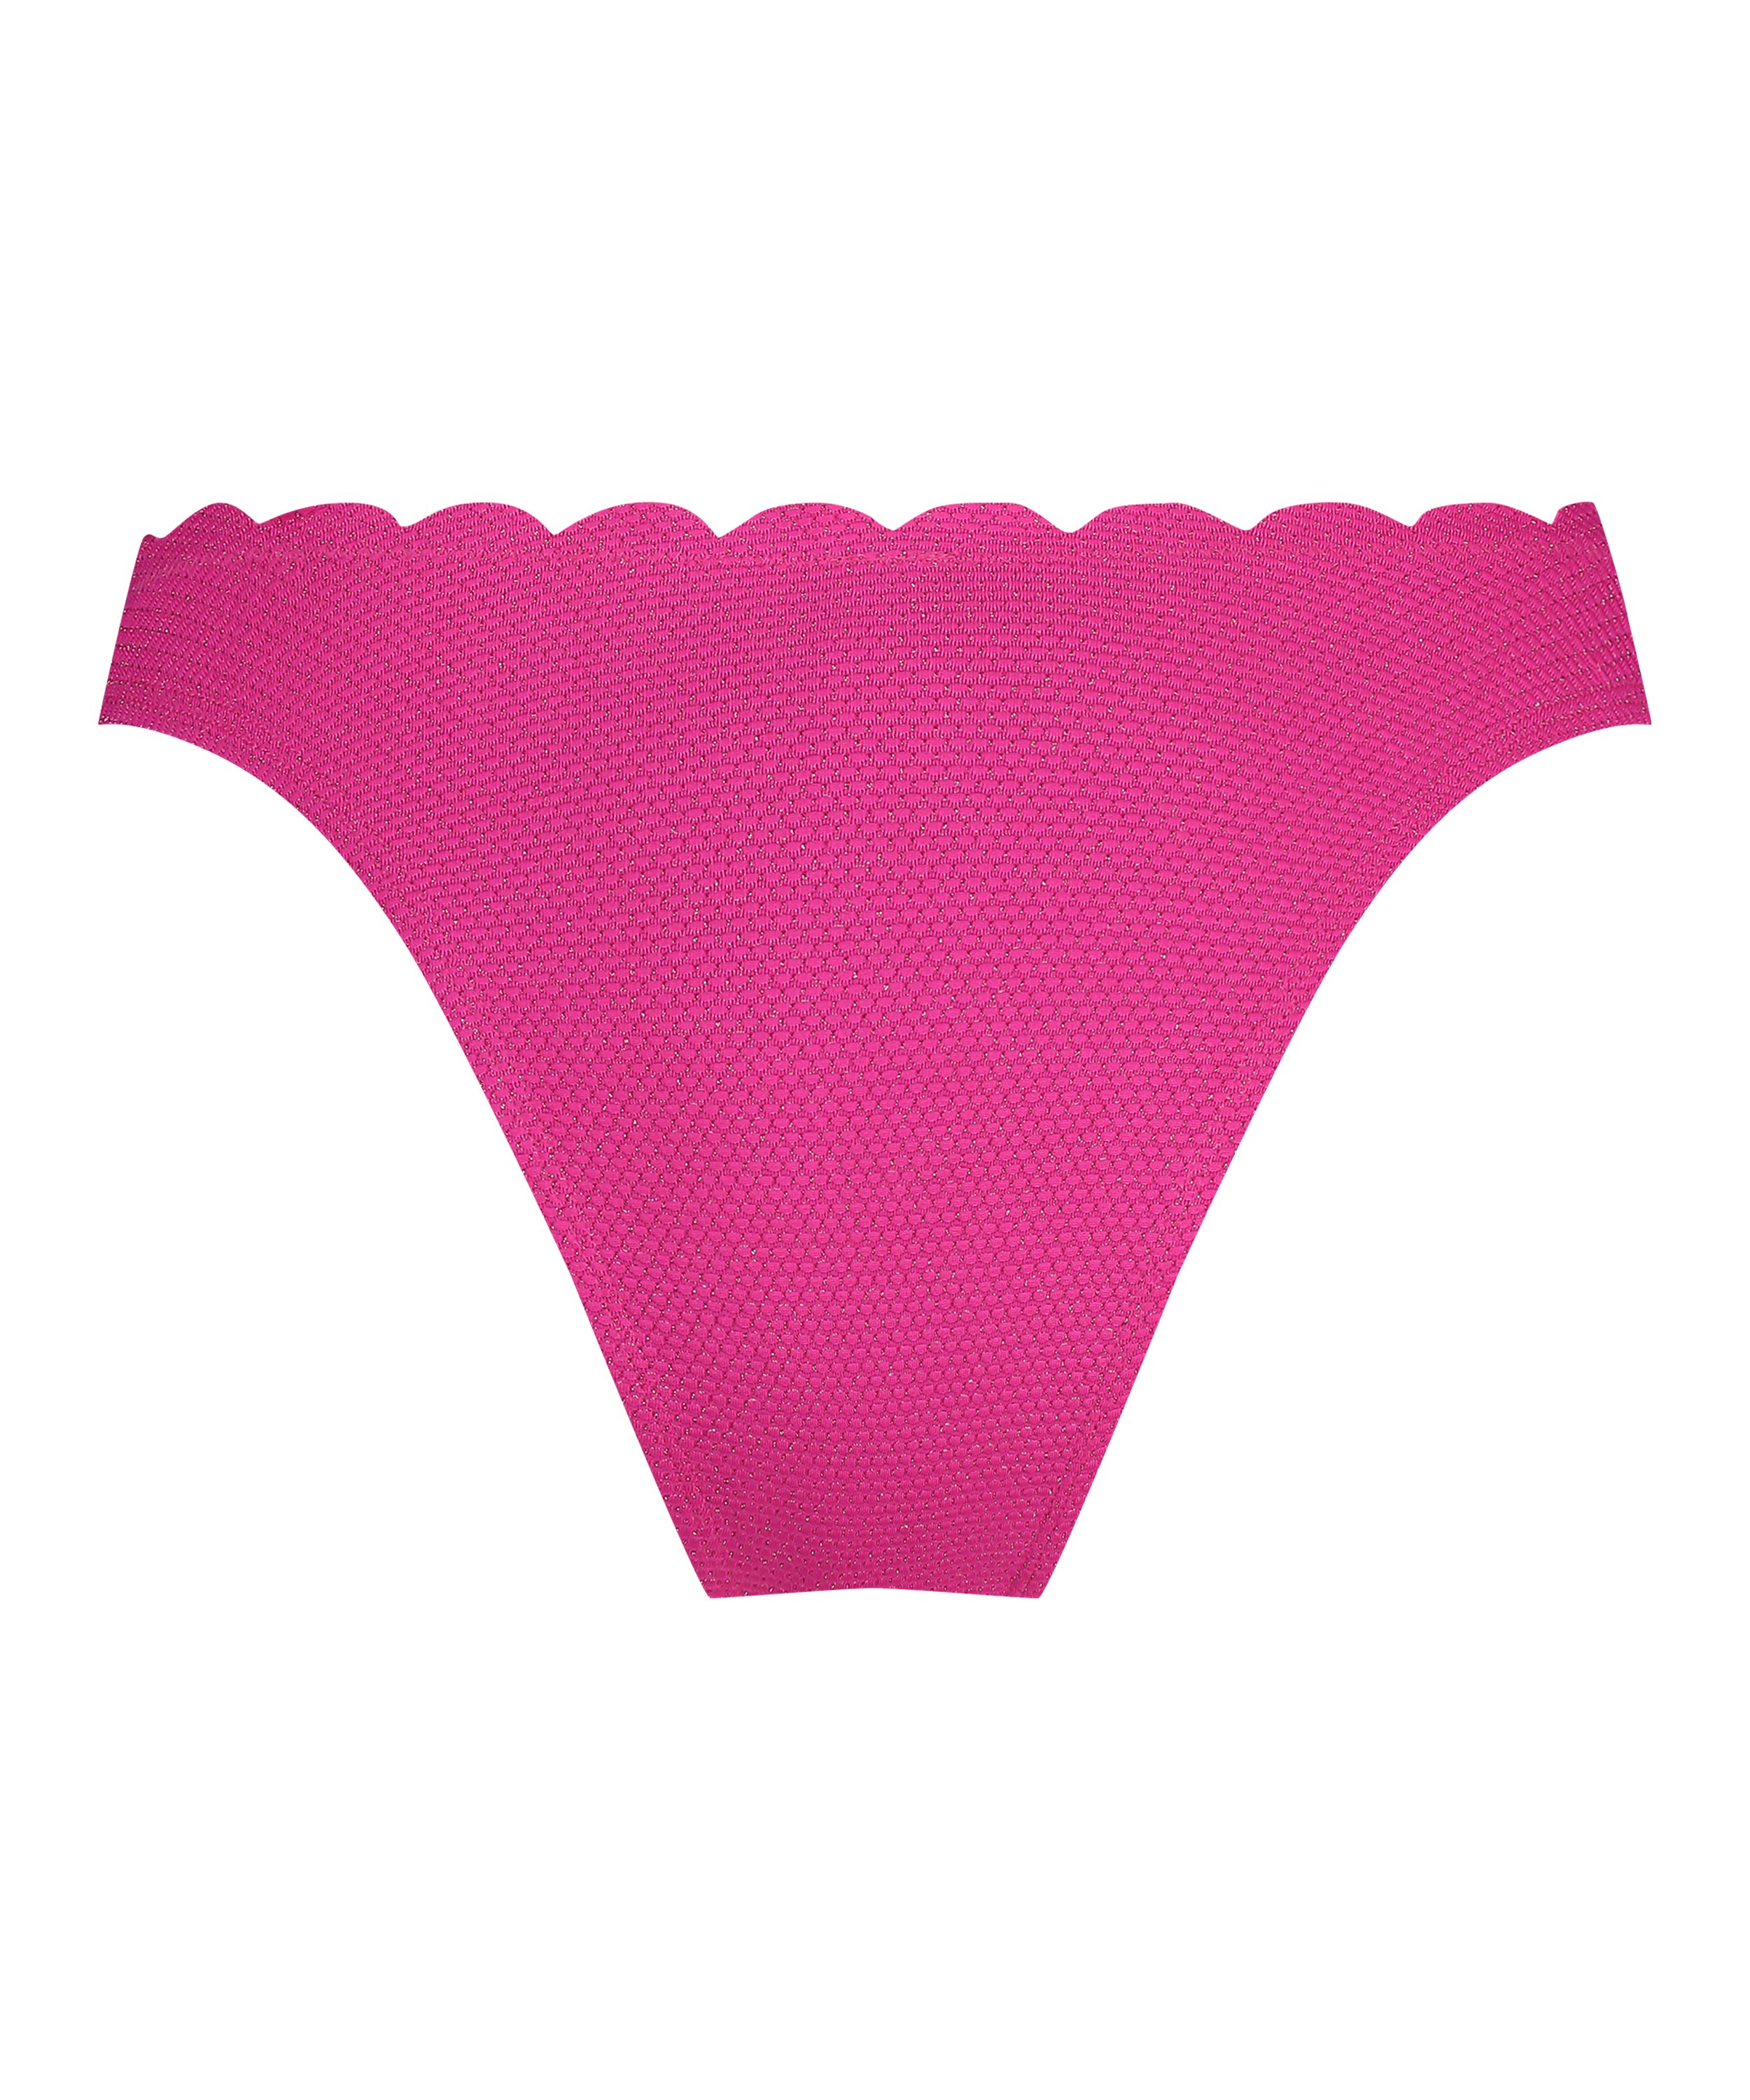 Højskåret Bikinitrusse Scallop Lurex, pink, main